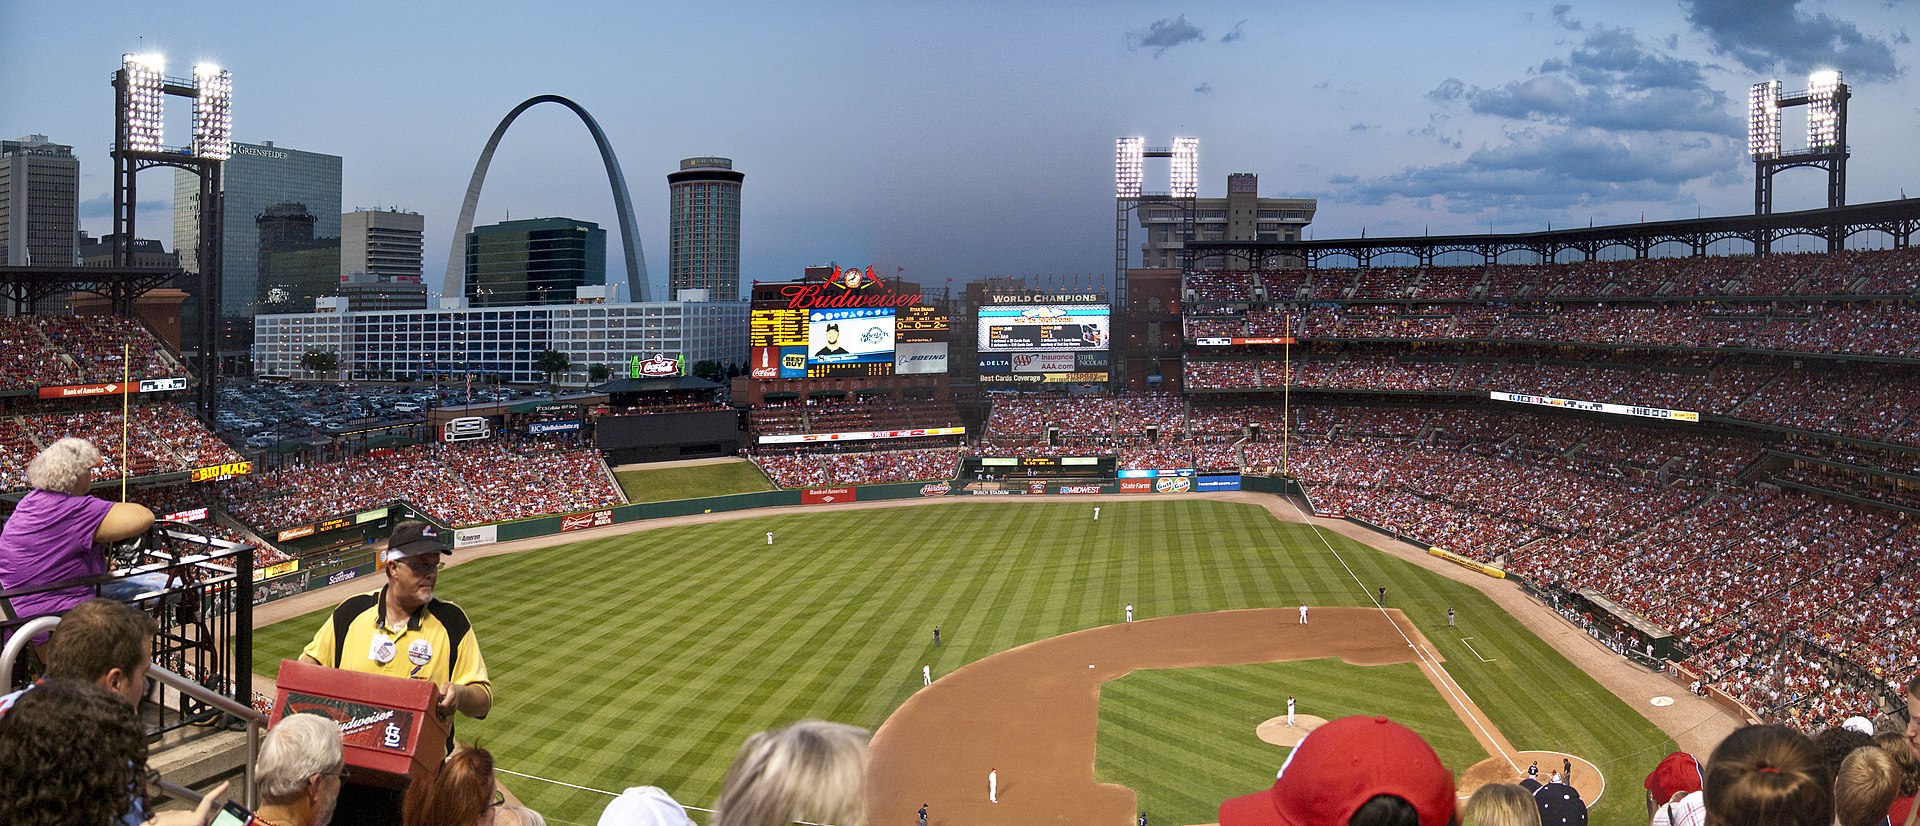 Large Baseball Stadium in St. Louis, MO